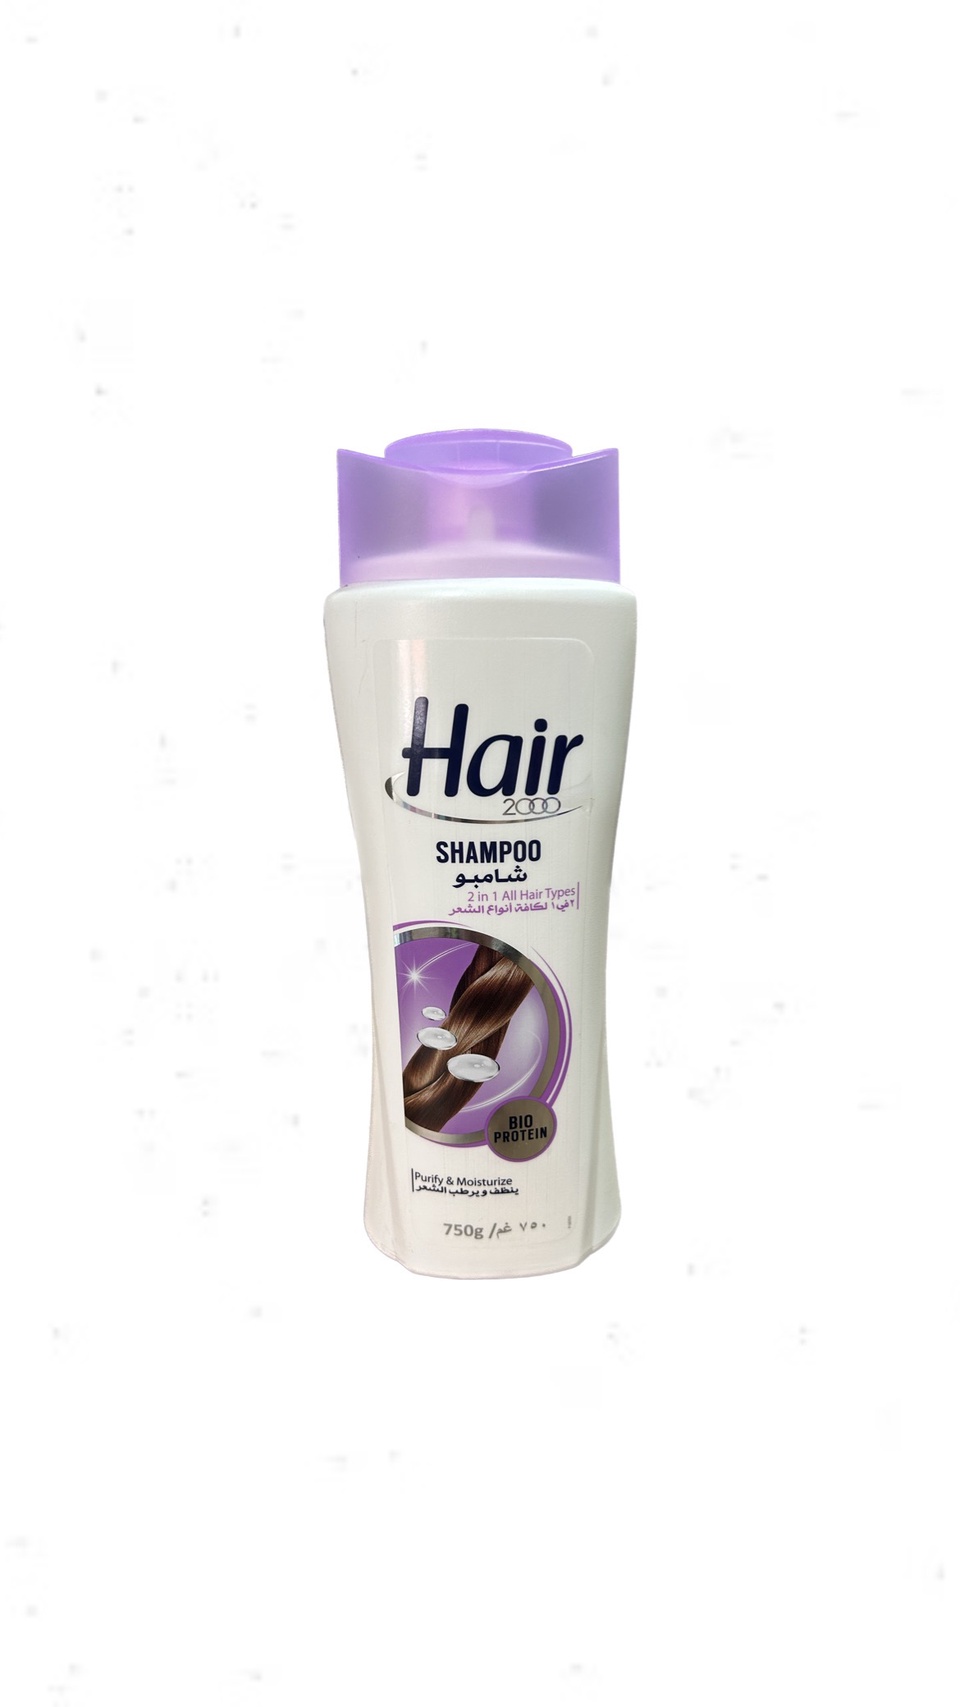 Шампунь Hair 2 в 1 для всех типов волос 750 мл - 300 ₽, заказать онлайн.